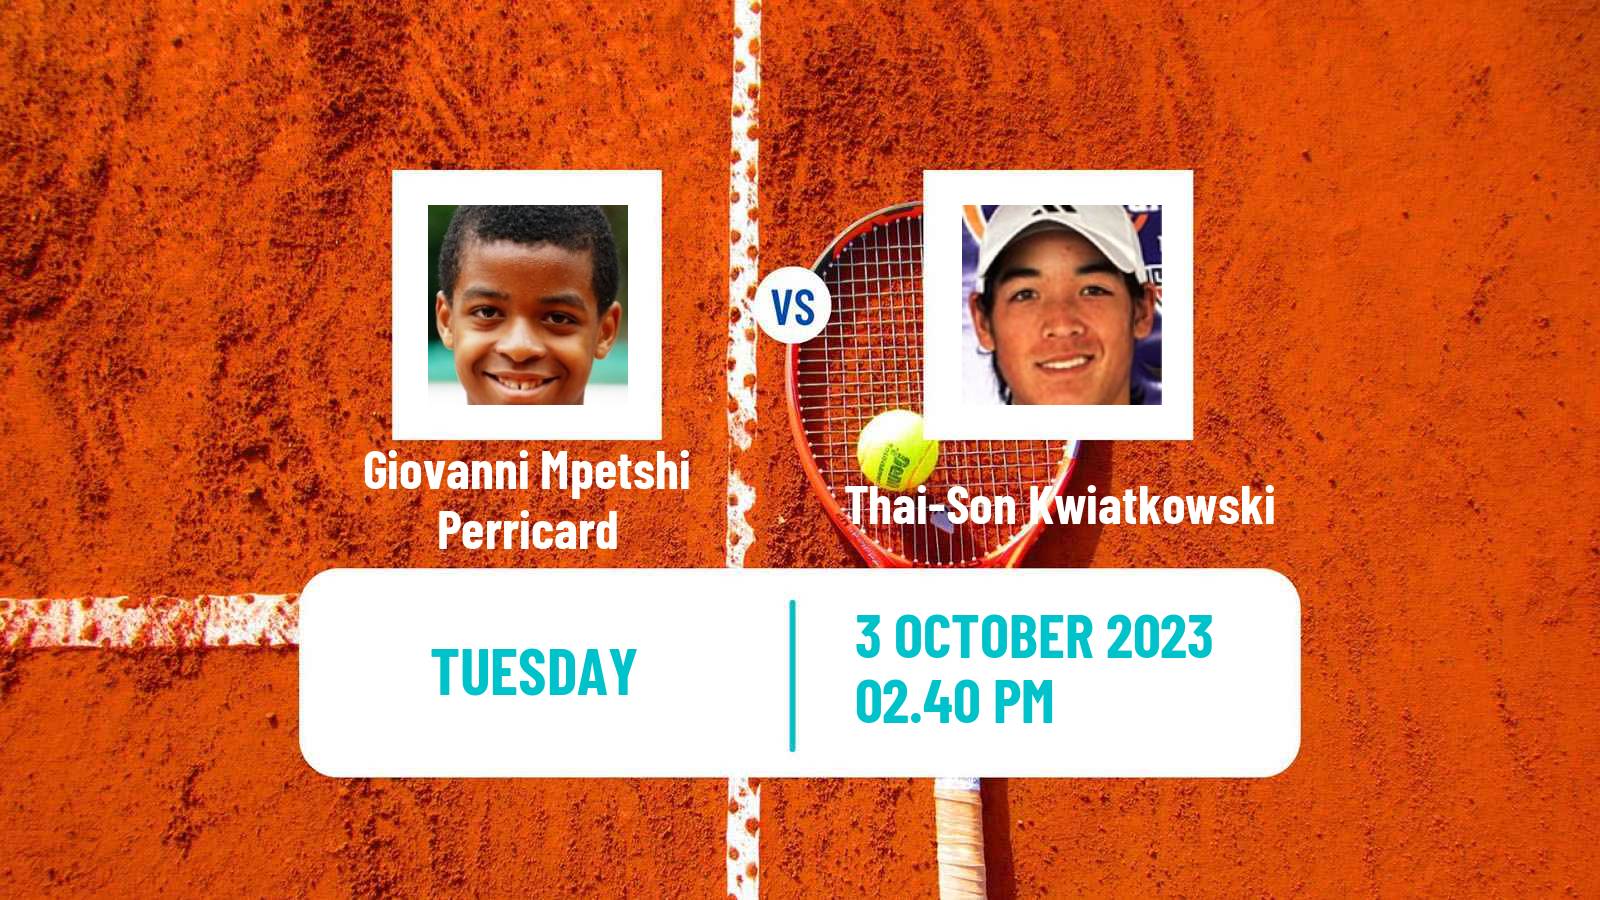 Tennis Tiburon Challenger Men Giovanni Mpetshi Perricard - Thai-Son Kwiatkowski